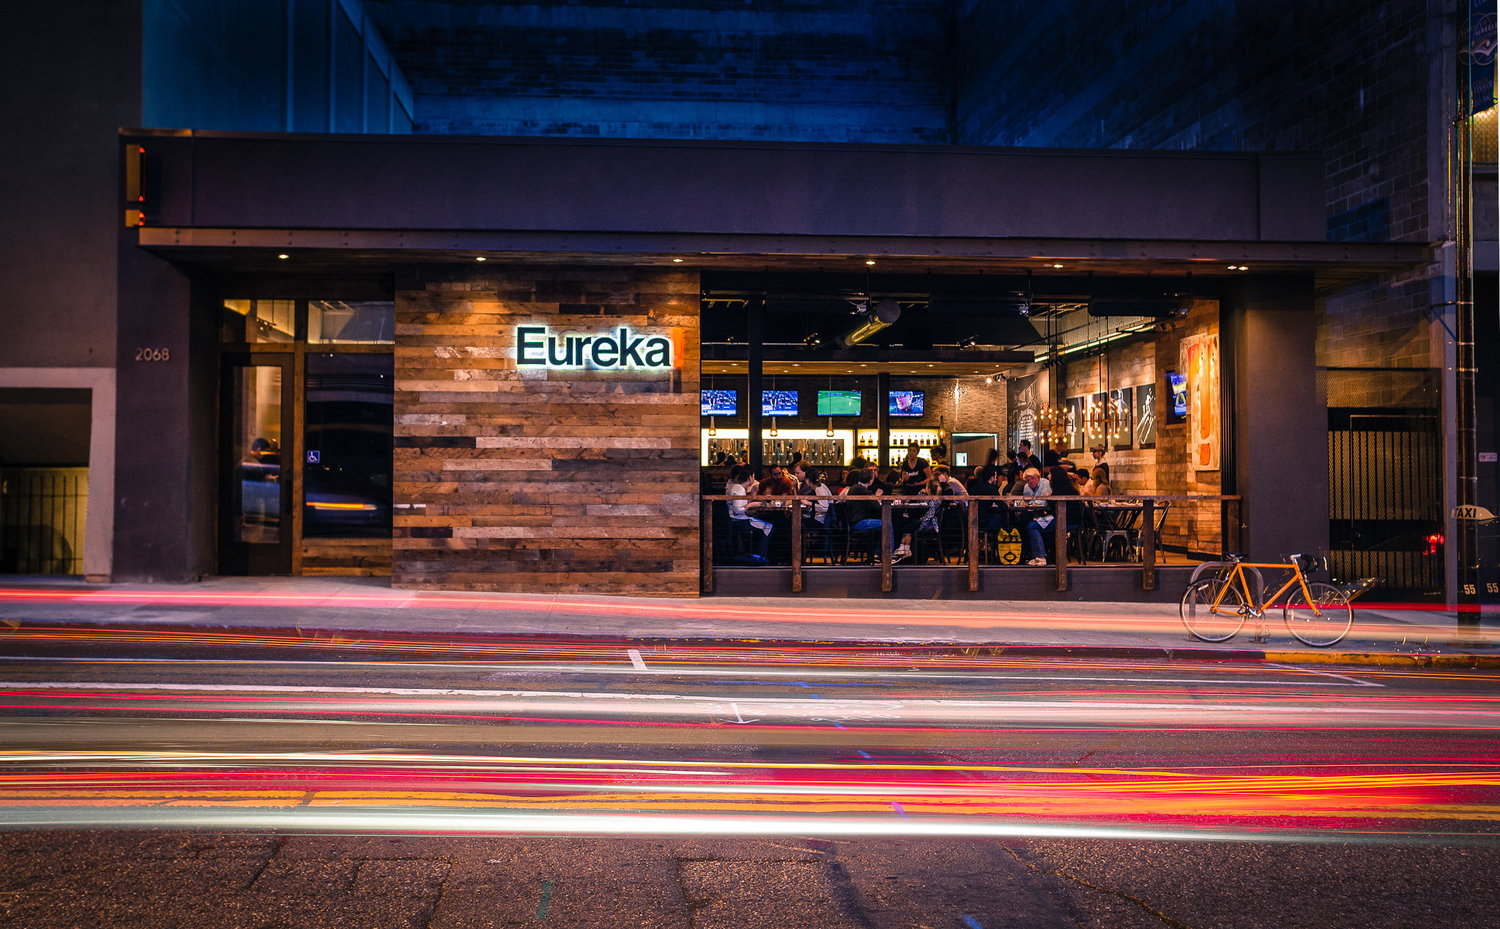 eureka-berkeley-restaurant-architecture-001